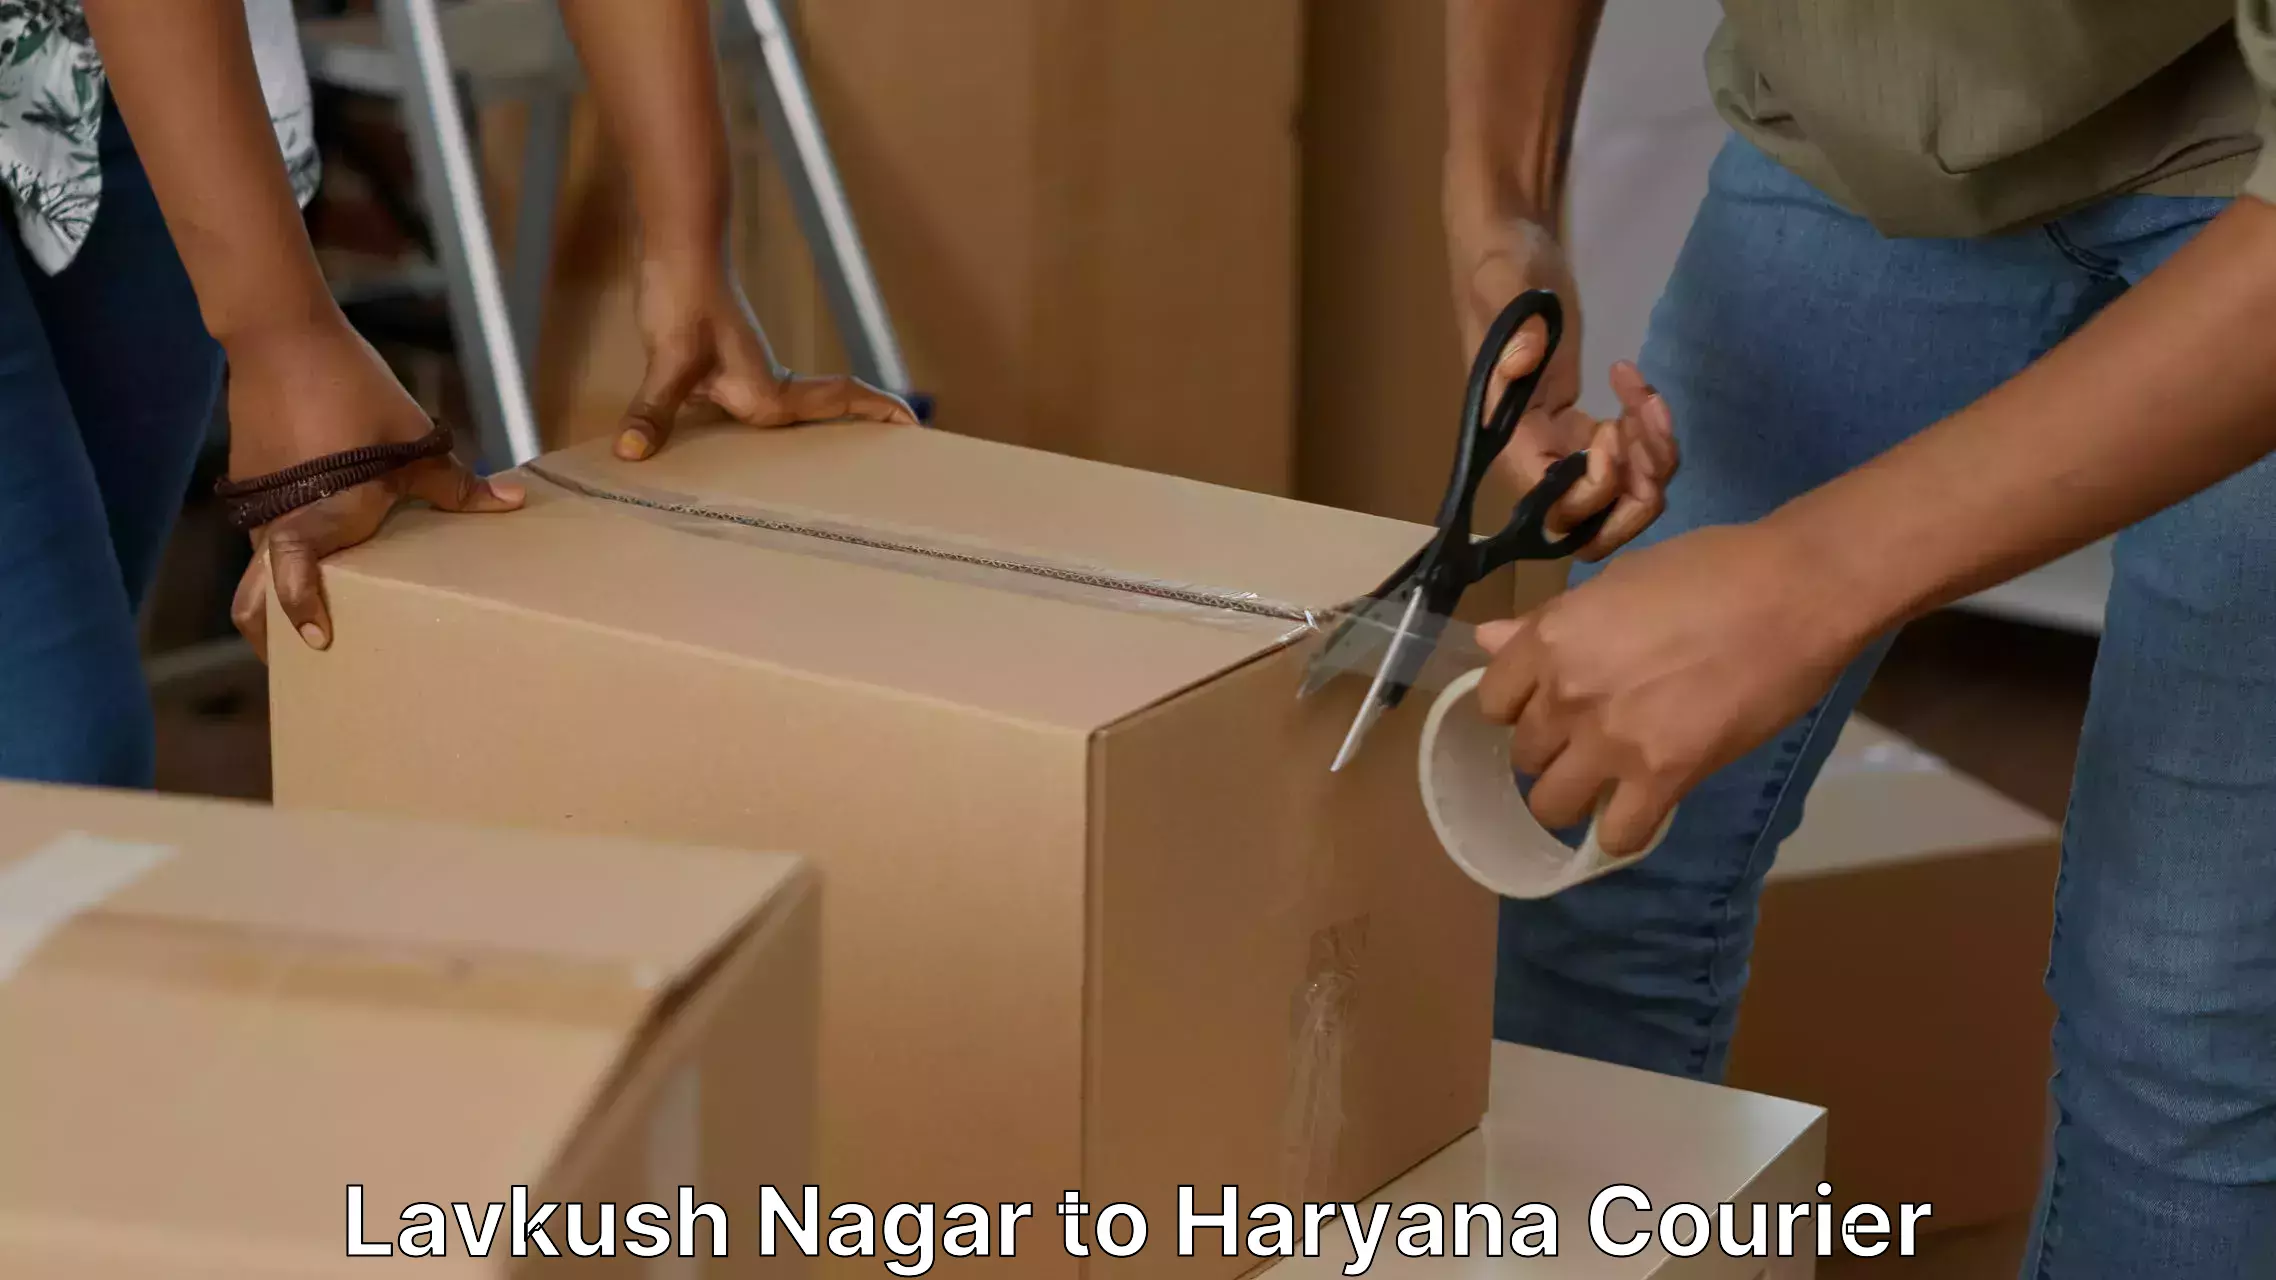 Efficient household movers Lavkush Nagar to Chaudhary Charan Singh Haryana Agricultural University Hisar